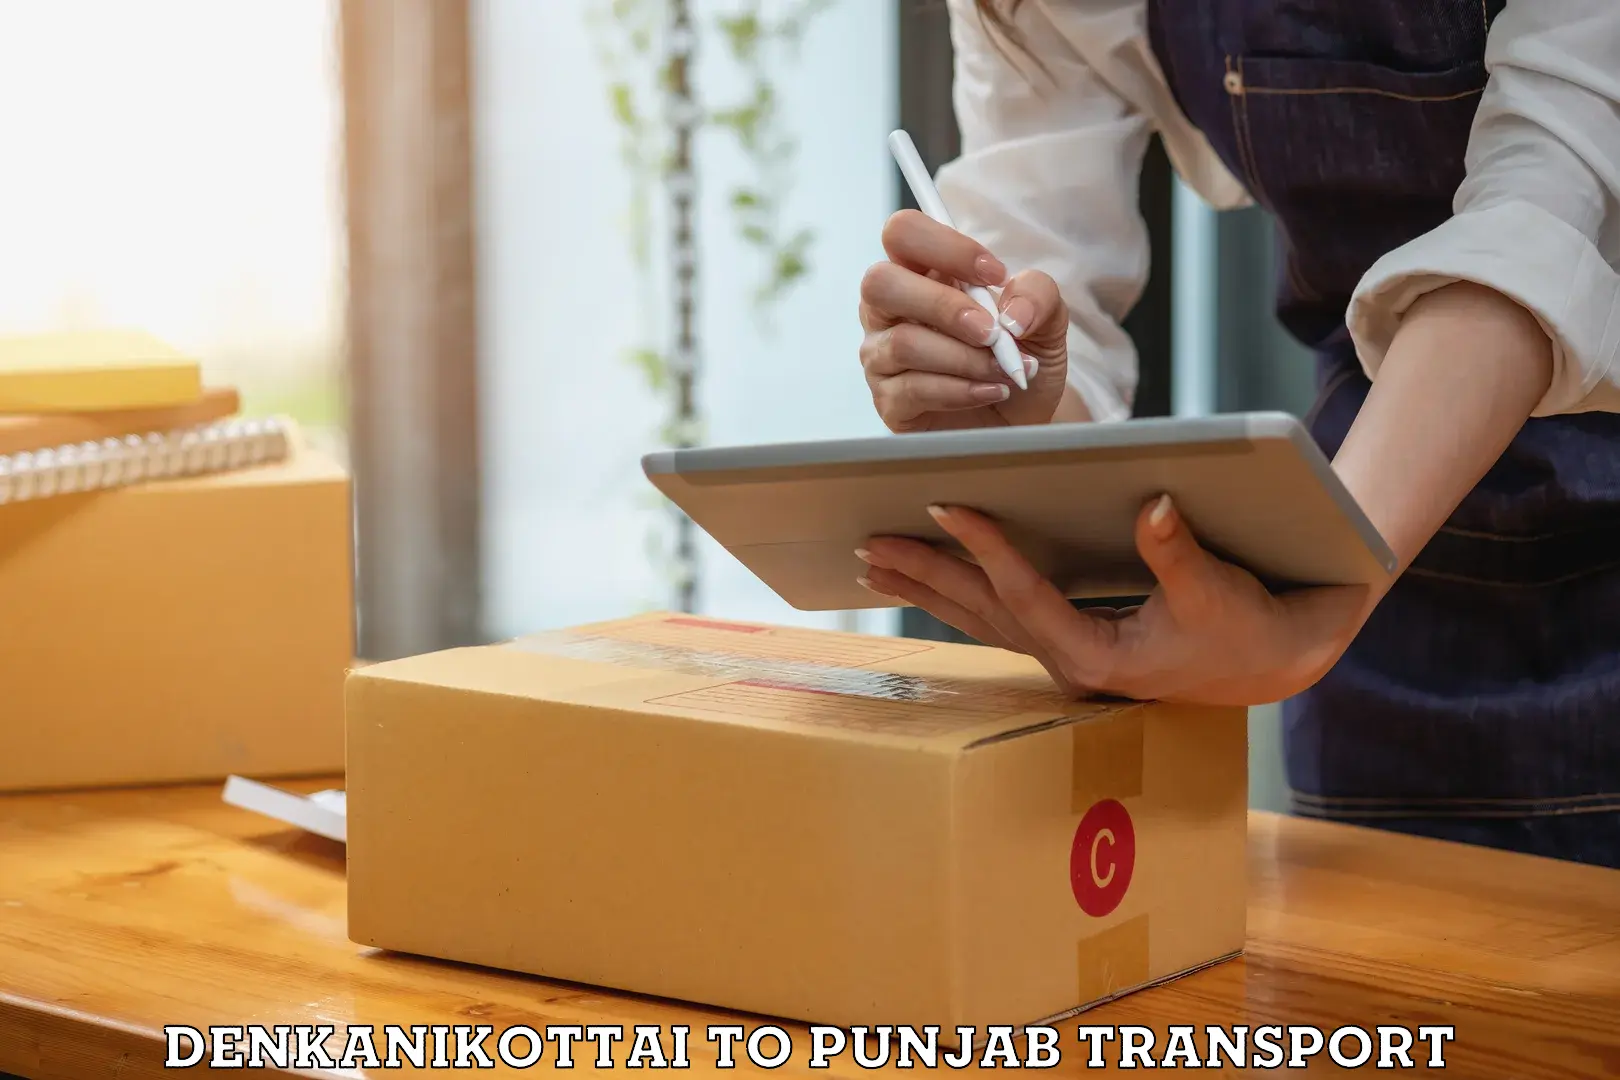 Nearest transport service Denkanikottai to Patti Tarn Tara